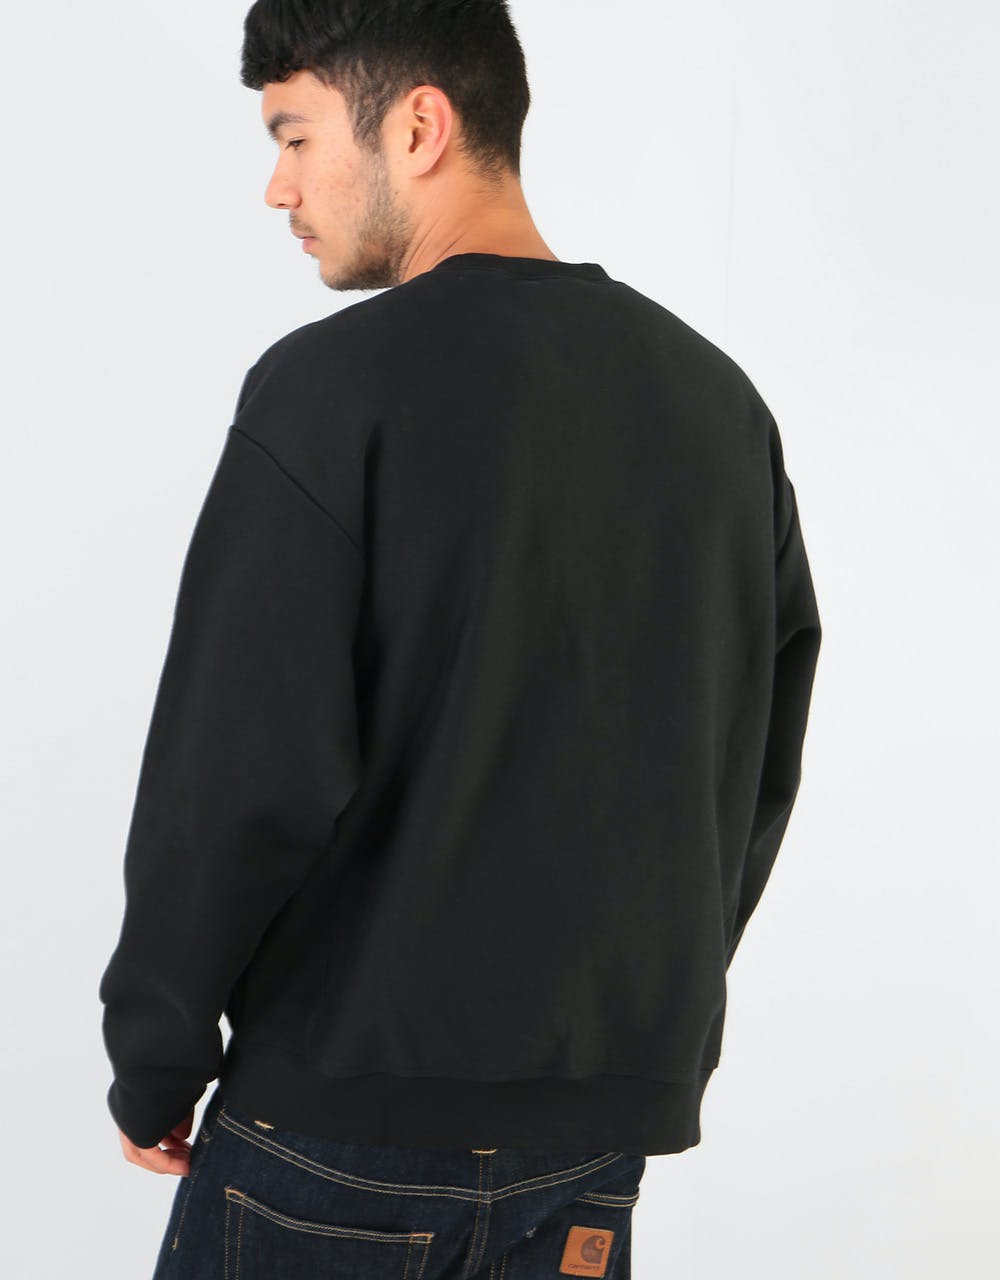 Carhartt WIP American Script Sweatshirt - Black